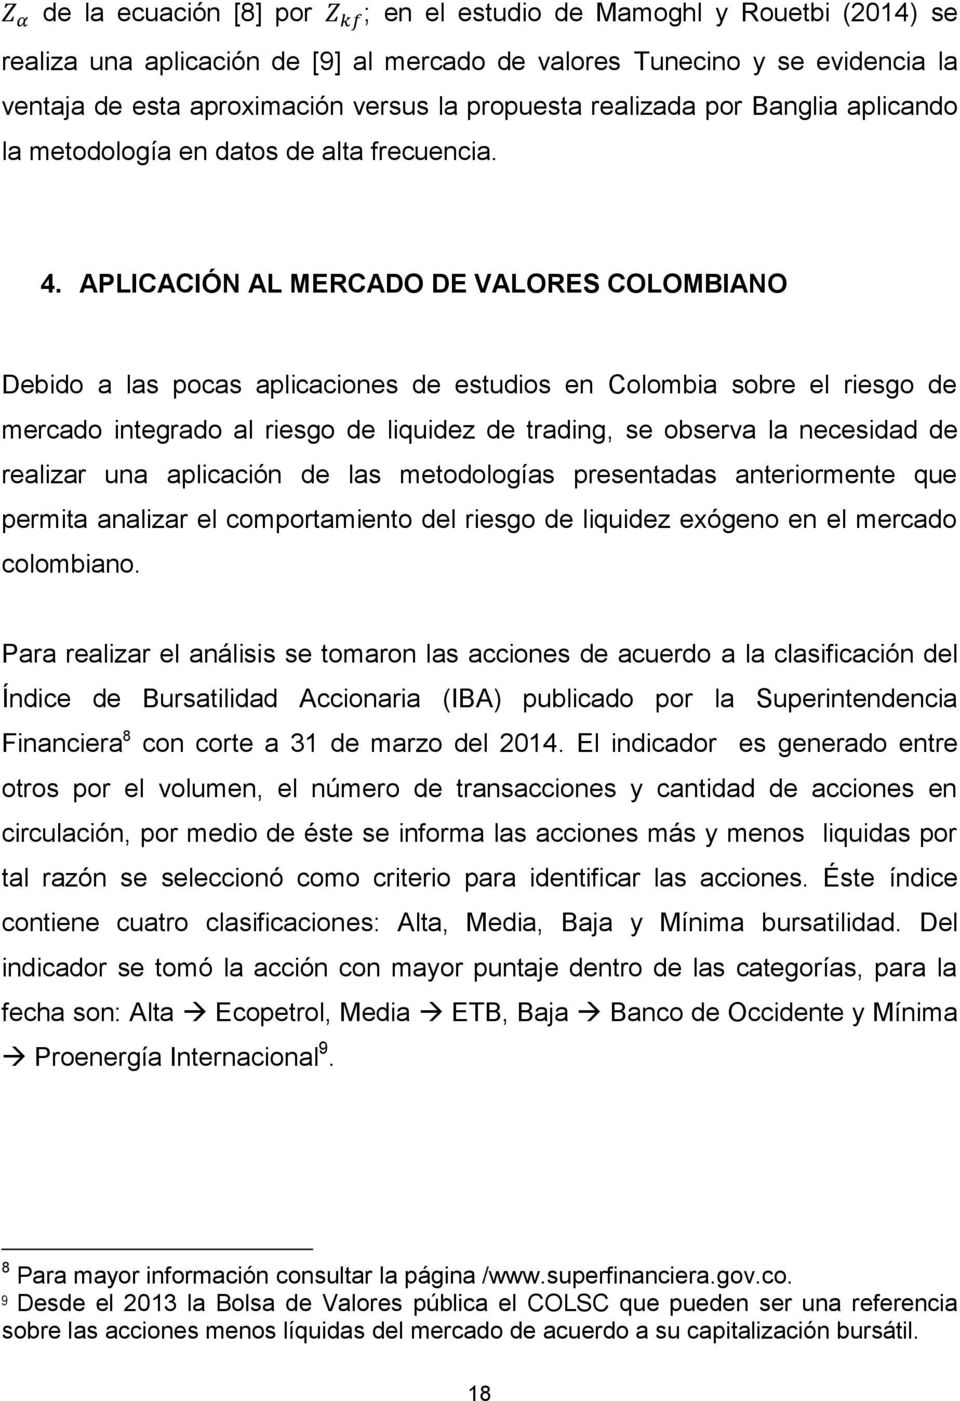 APLICACIÓN AL MERCADO DE VALORES COLOMBIANO Debido a las pocas aplicaciones de estudios en Colombia sobre el riesgo de mercado integrado al riesgo de liquidez de trading, se observa la necesidad de